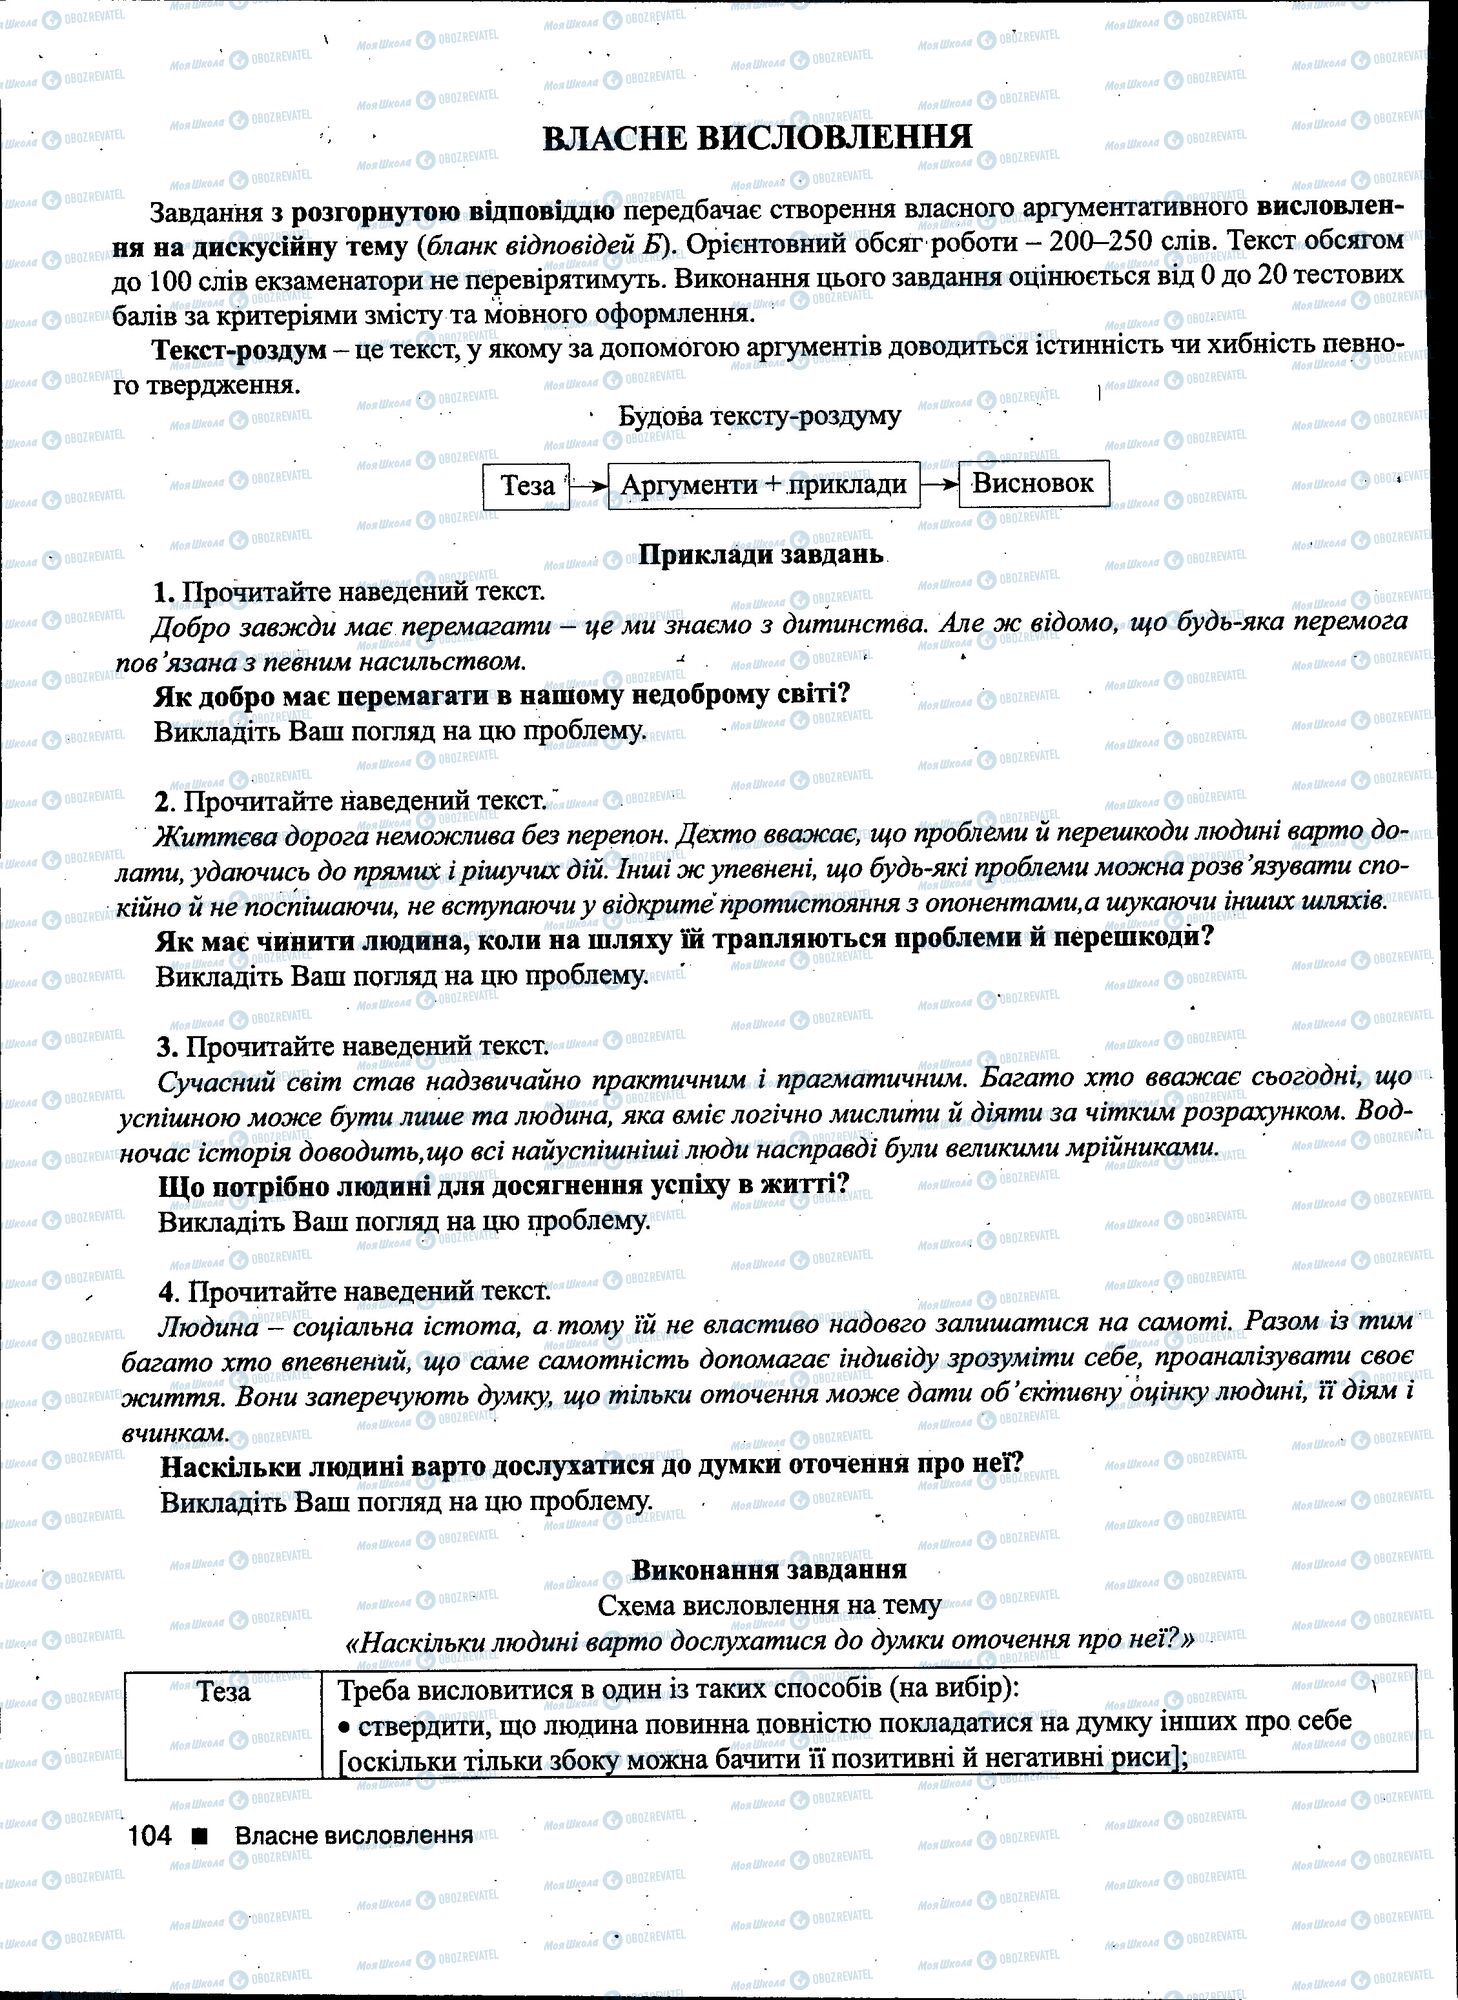 ДПА Укр мова 11 класс страница 104